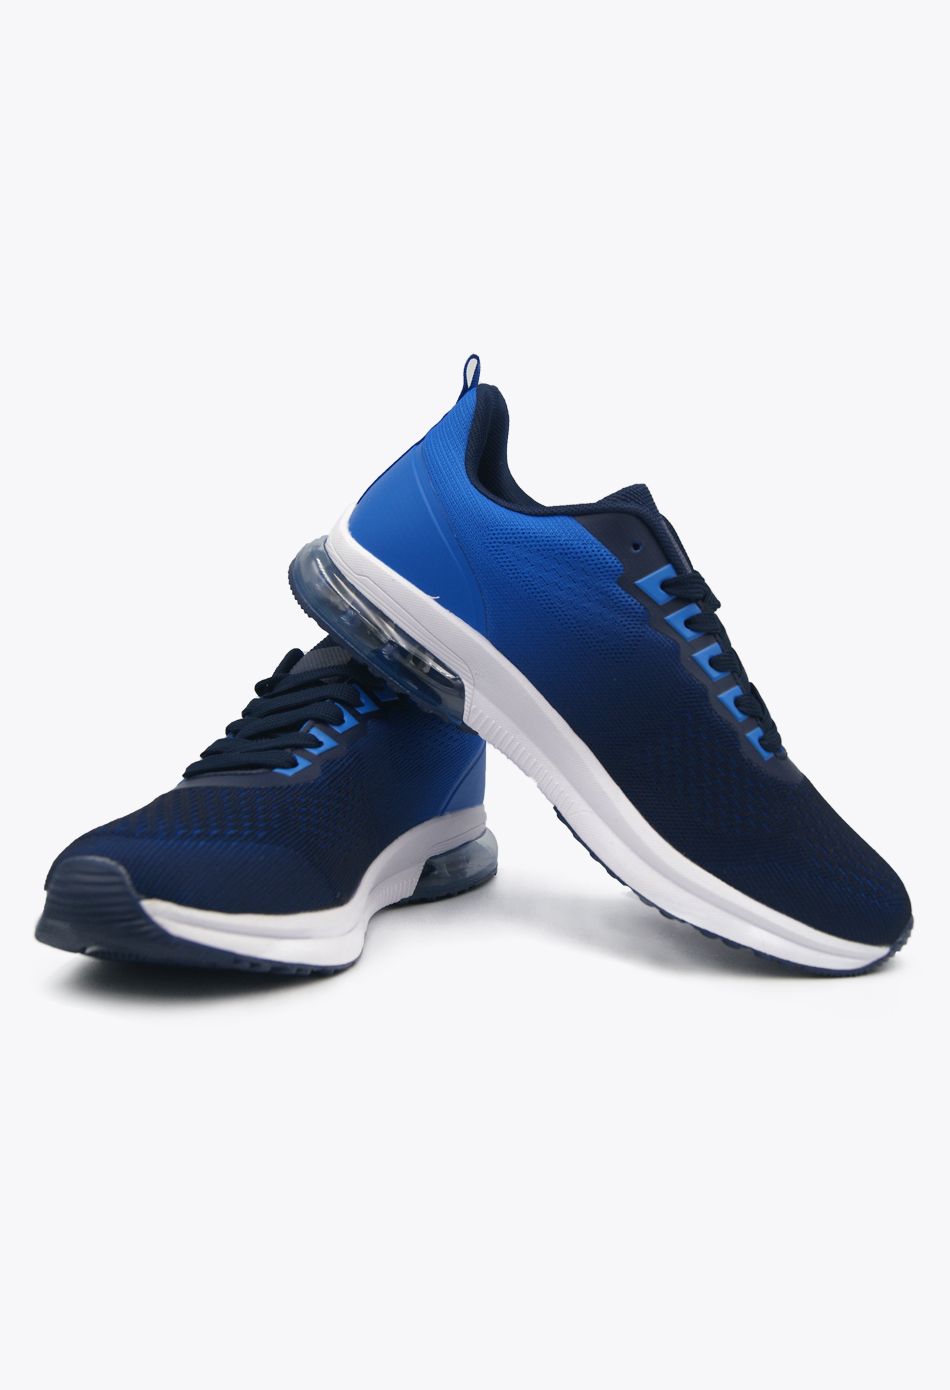 Ανδρικά Αθλητικά Παπούτσια για Τρέξιμο με αεροσόλα Μπλε / M-6345-navy ΑΘΛΗΤΙΚΑ & SNEAKERS joya.gr